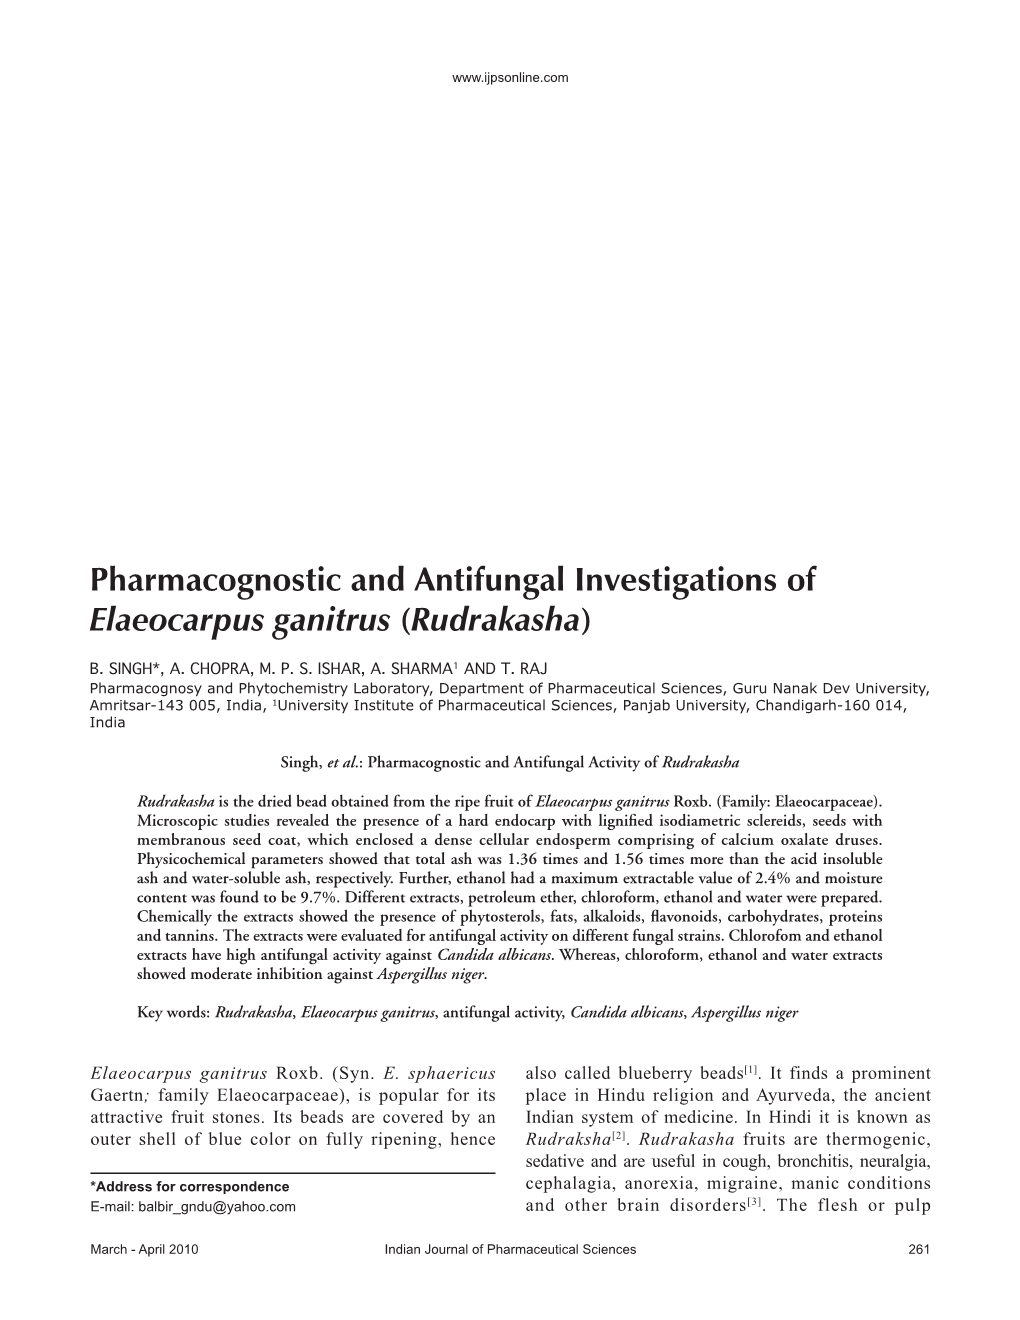 Pharmacognostic and Antifungal Investigations of Elaeocarpus Ganitrus (Rudrakasha)